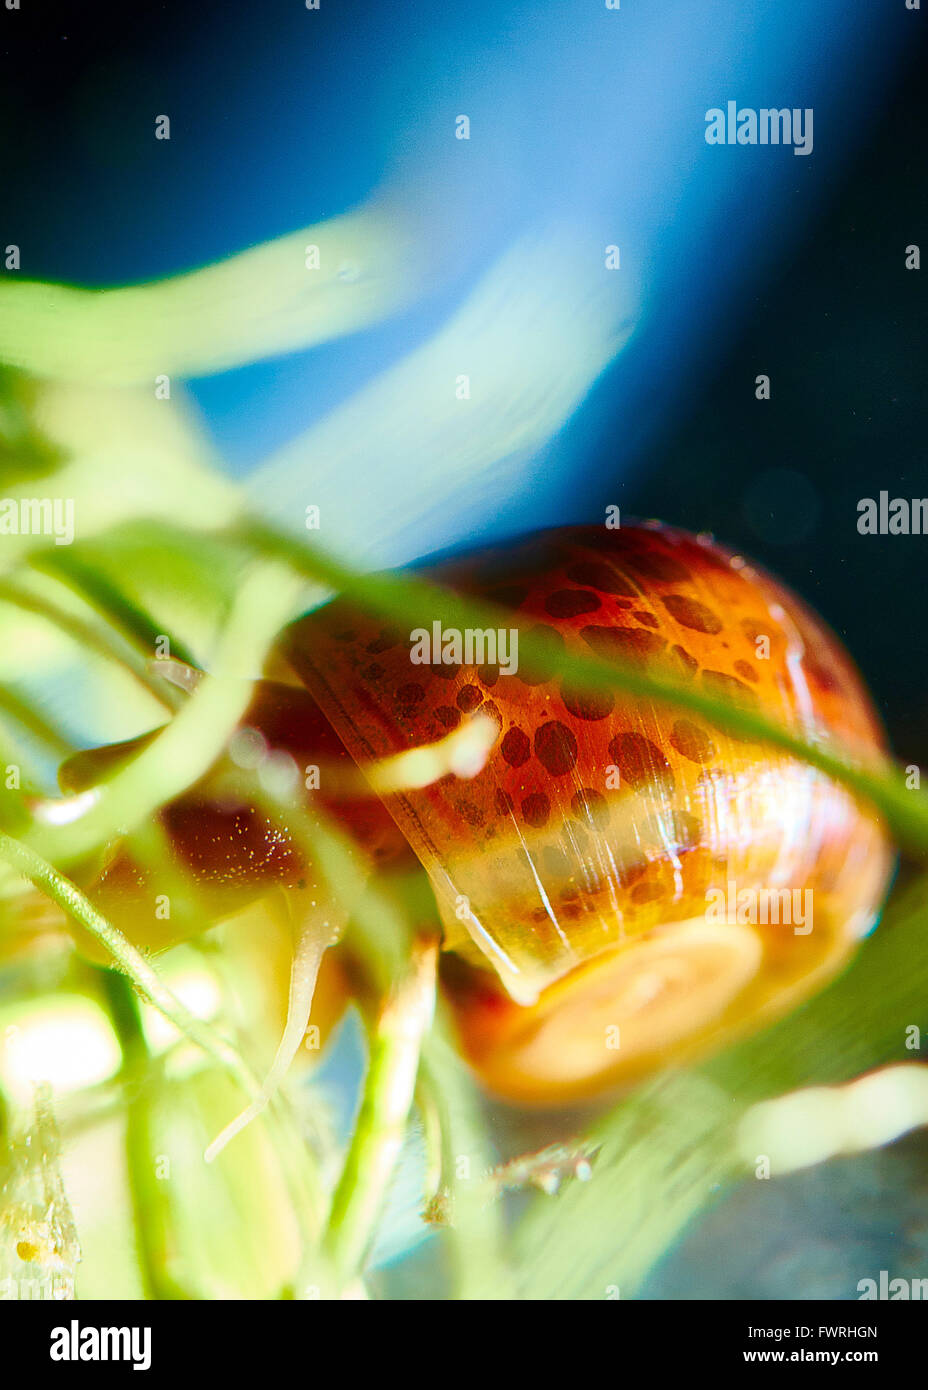 Aquarium snail Stock Photo